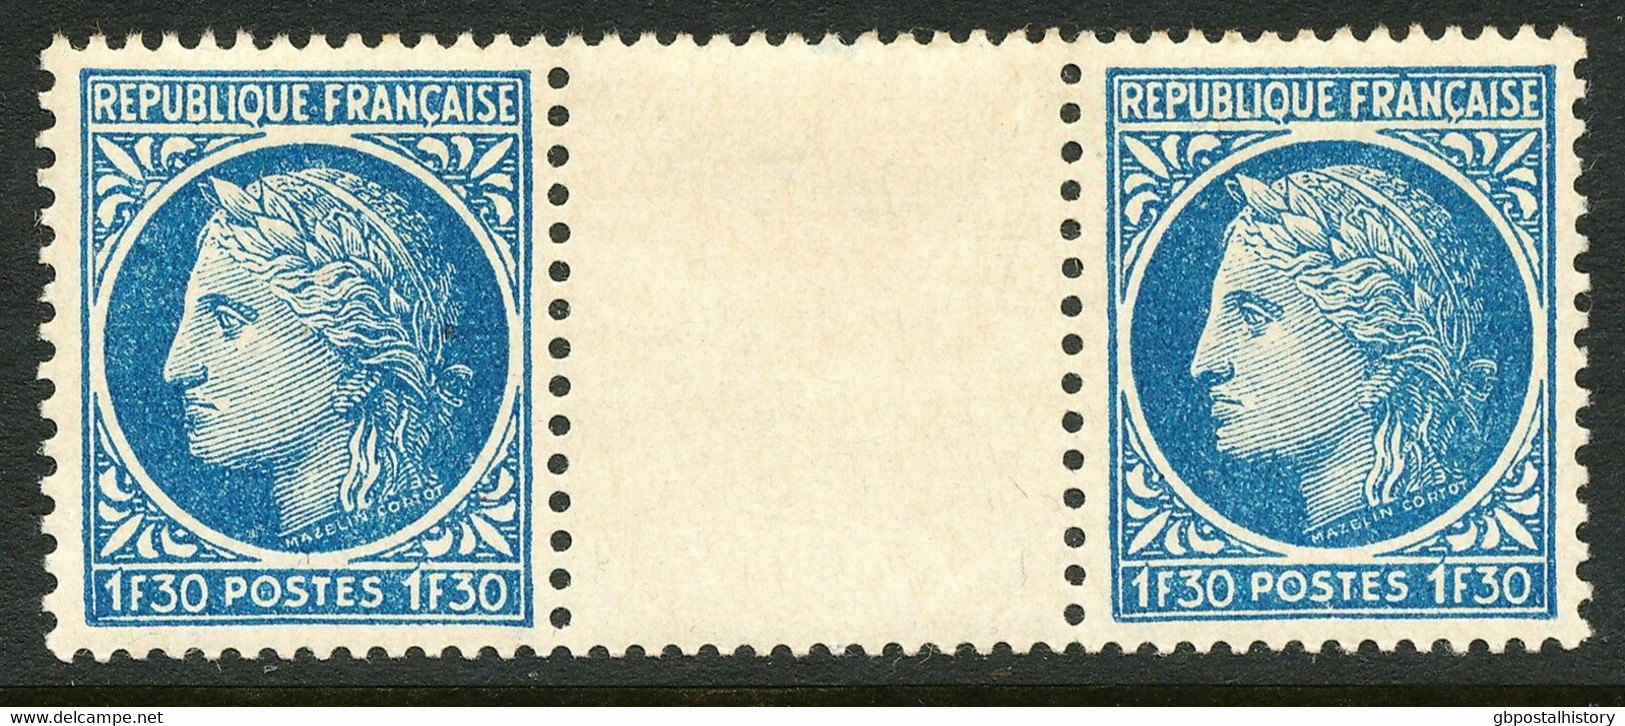 FRANKREICH 1947 Ceres (Type Mazelin) 1.30Fr. ABART Postfrisches Zwischenstegpaar - Neufs